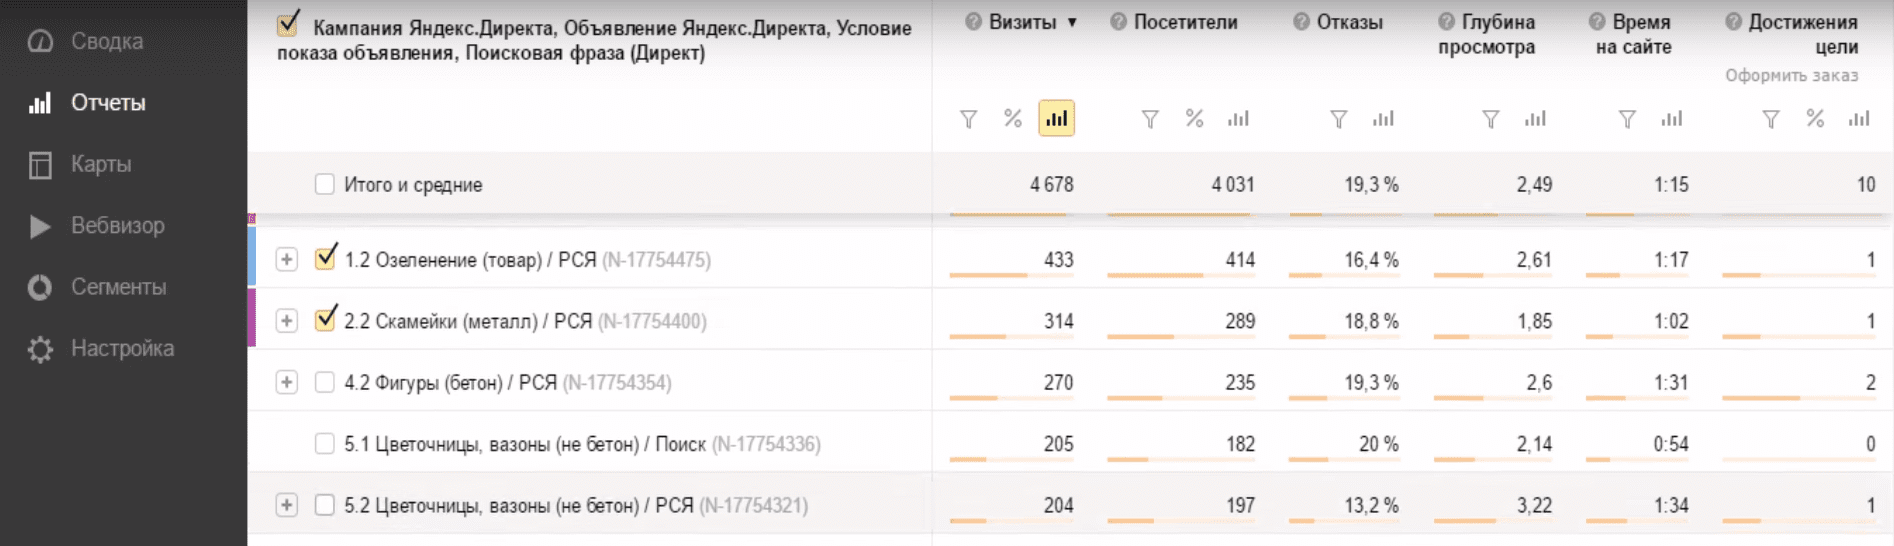 Отчет «Яндекс.Директ Сводка»